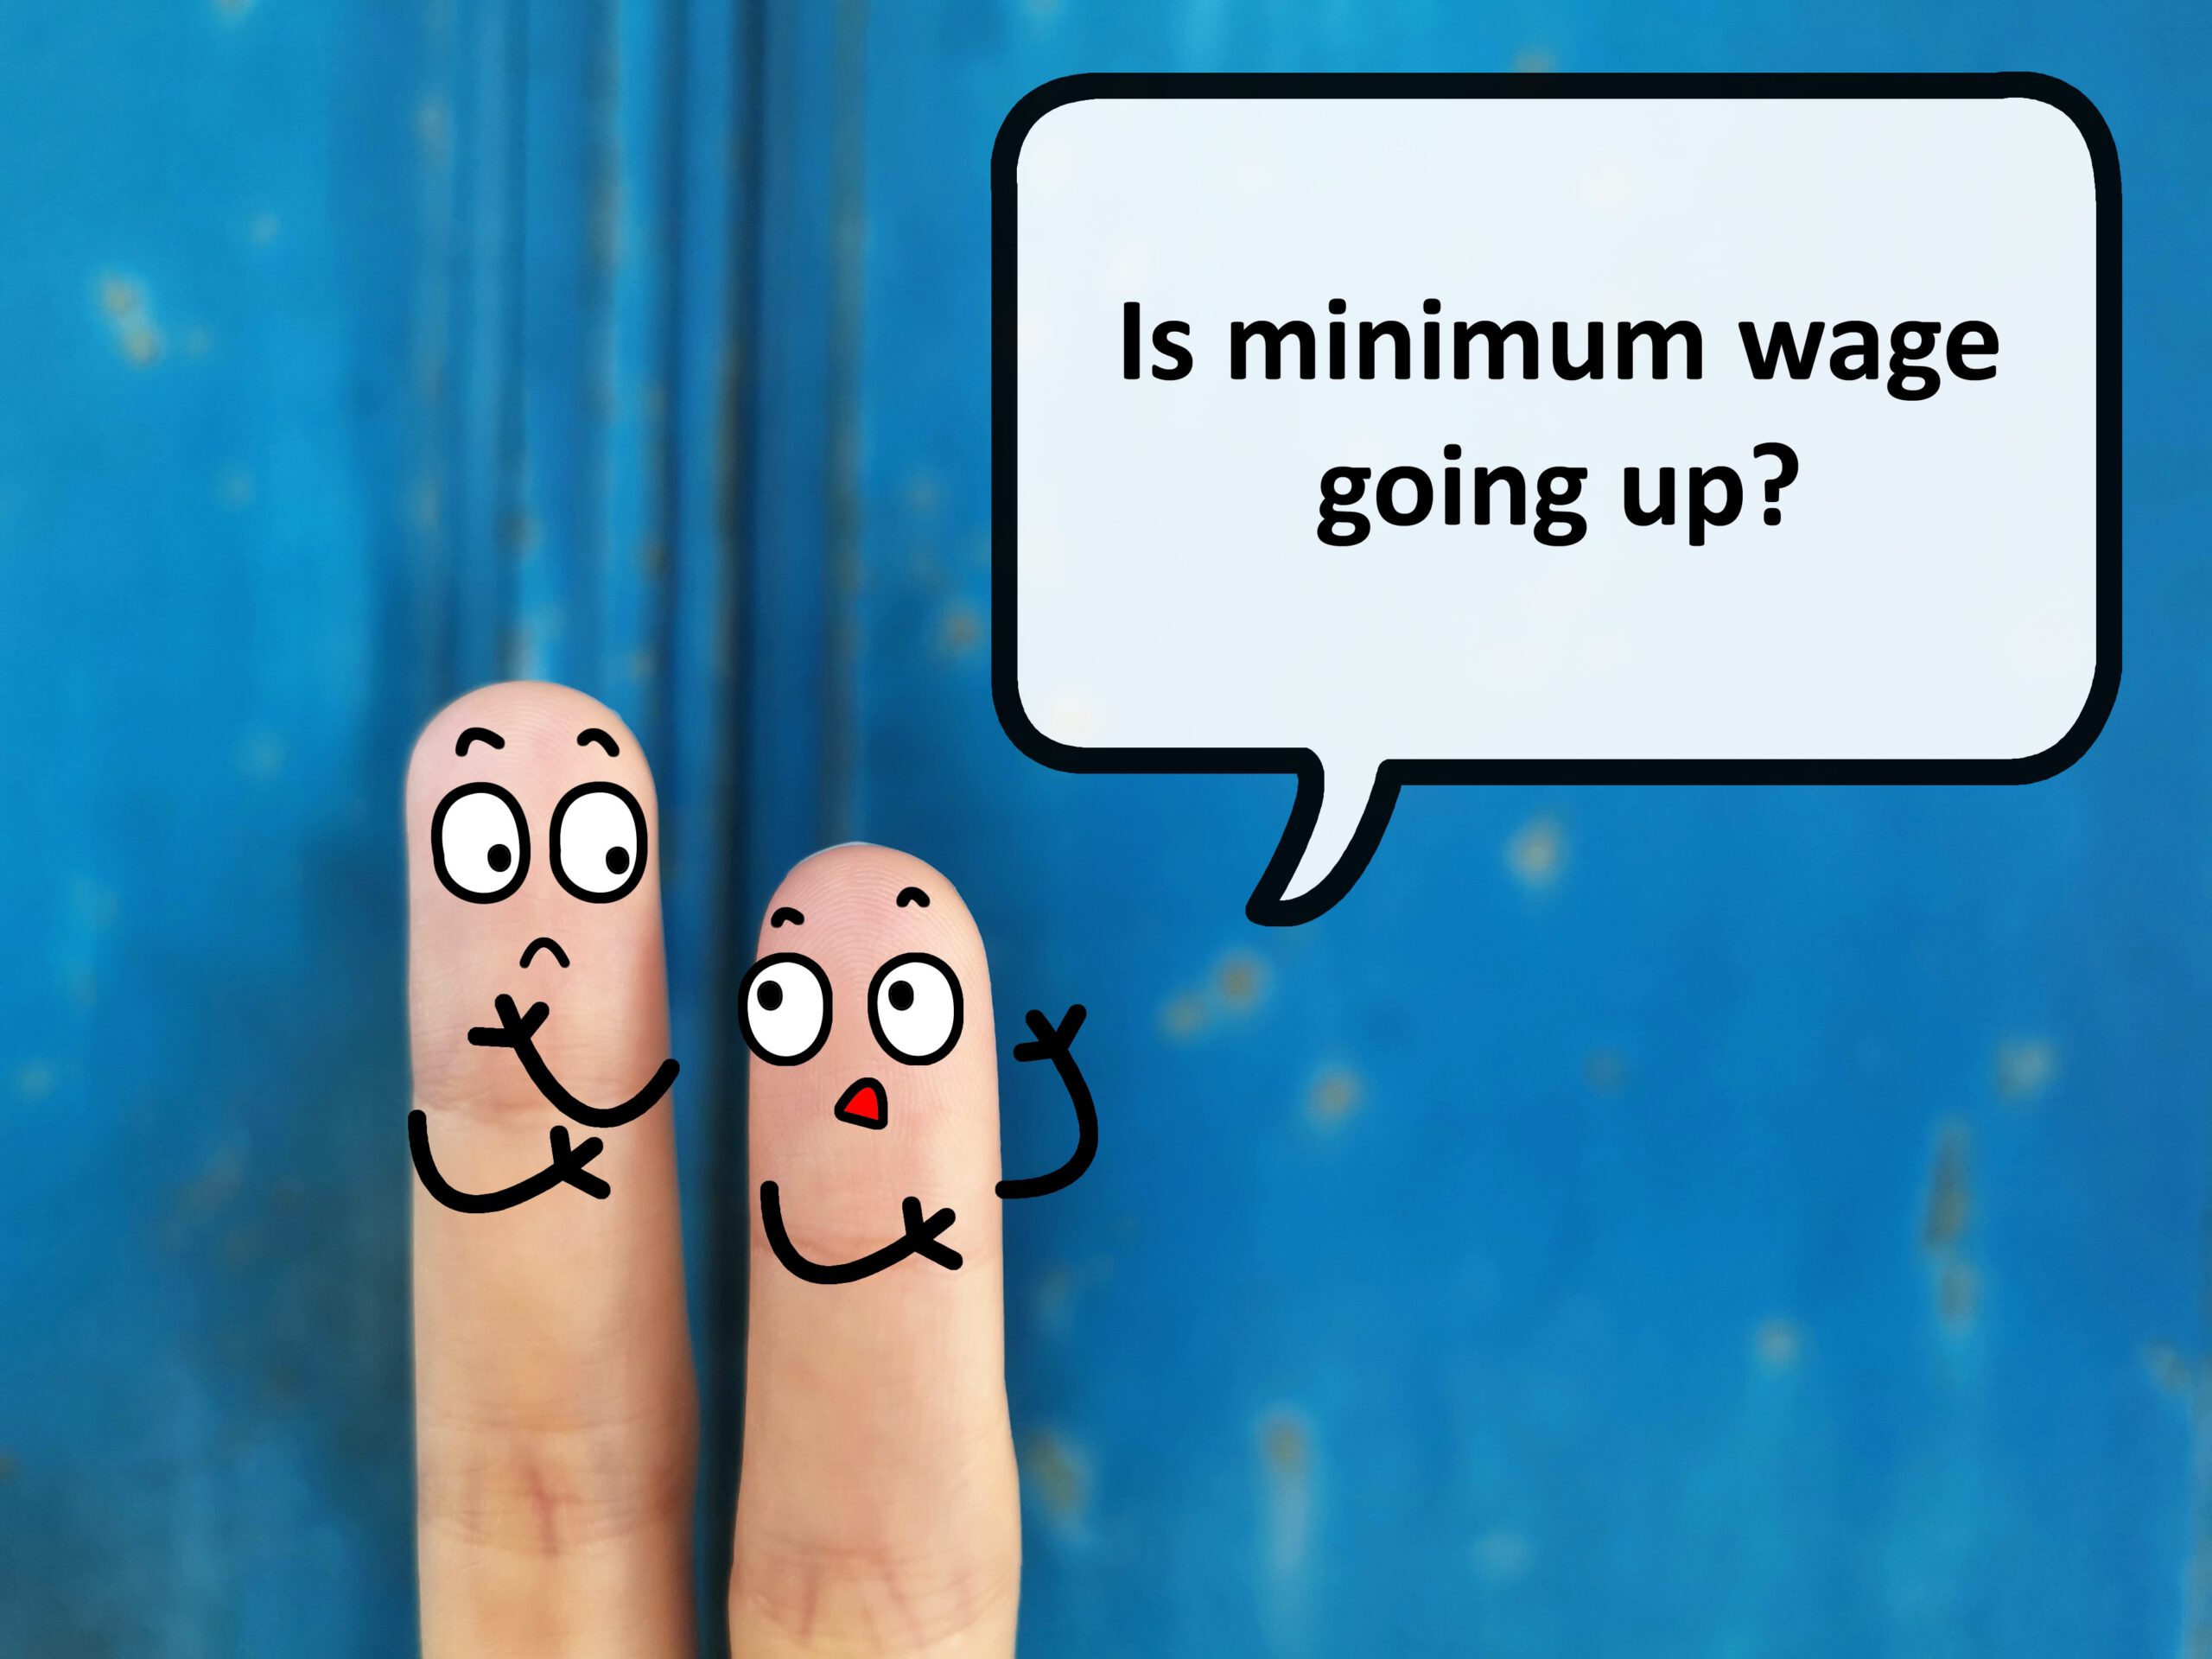 Minimumloon